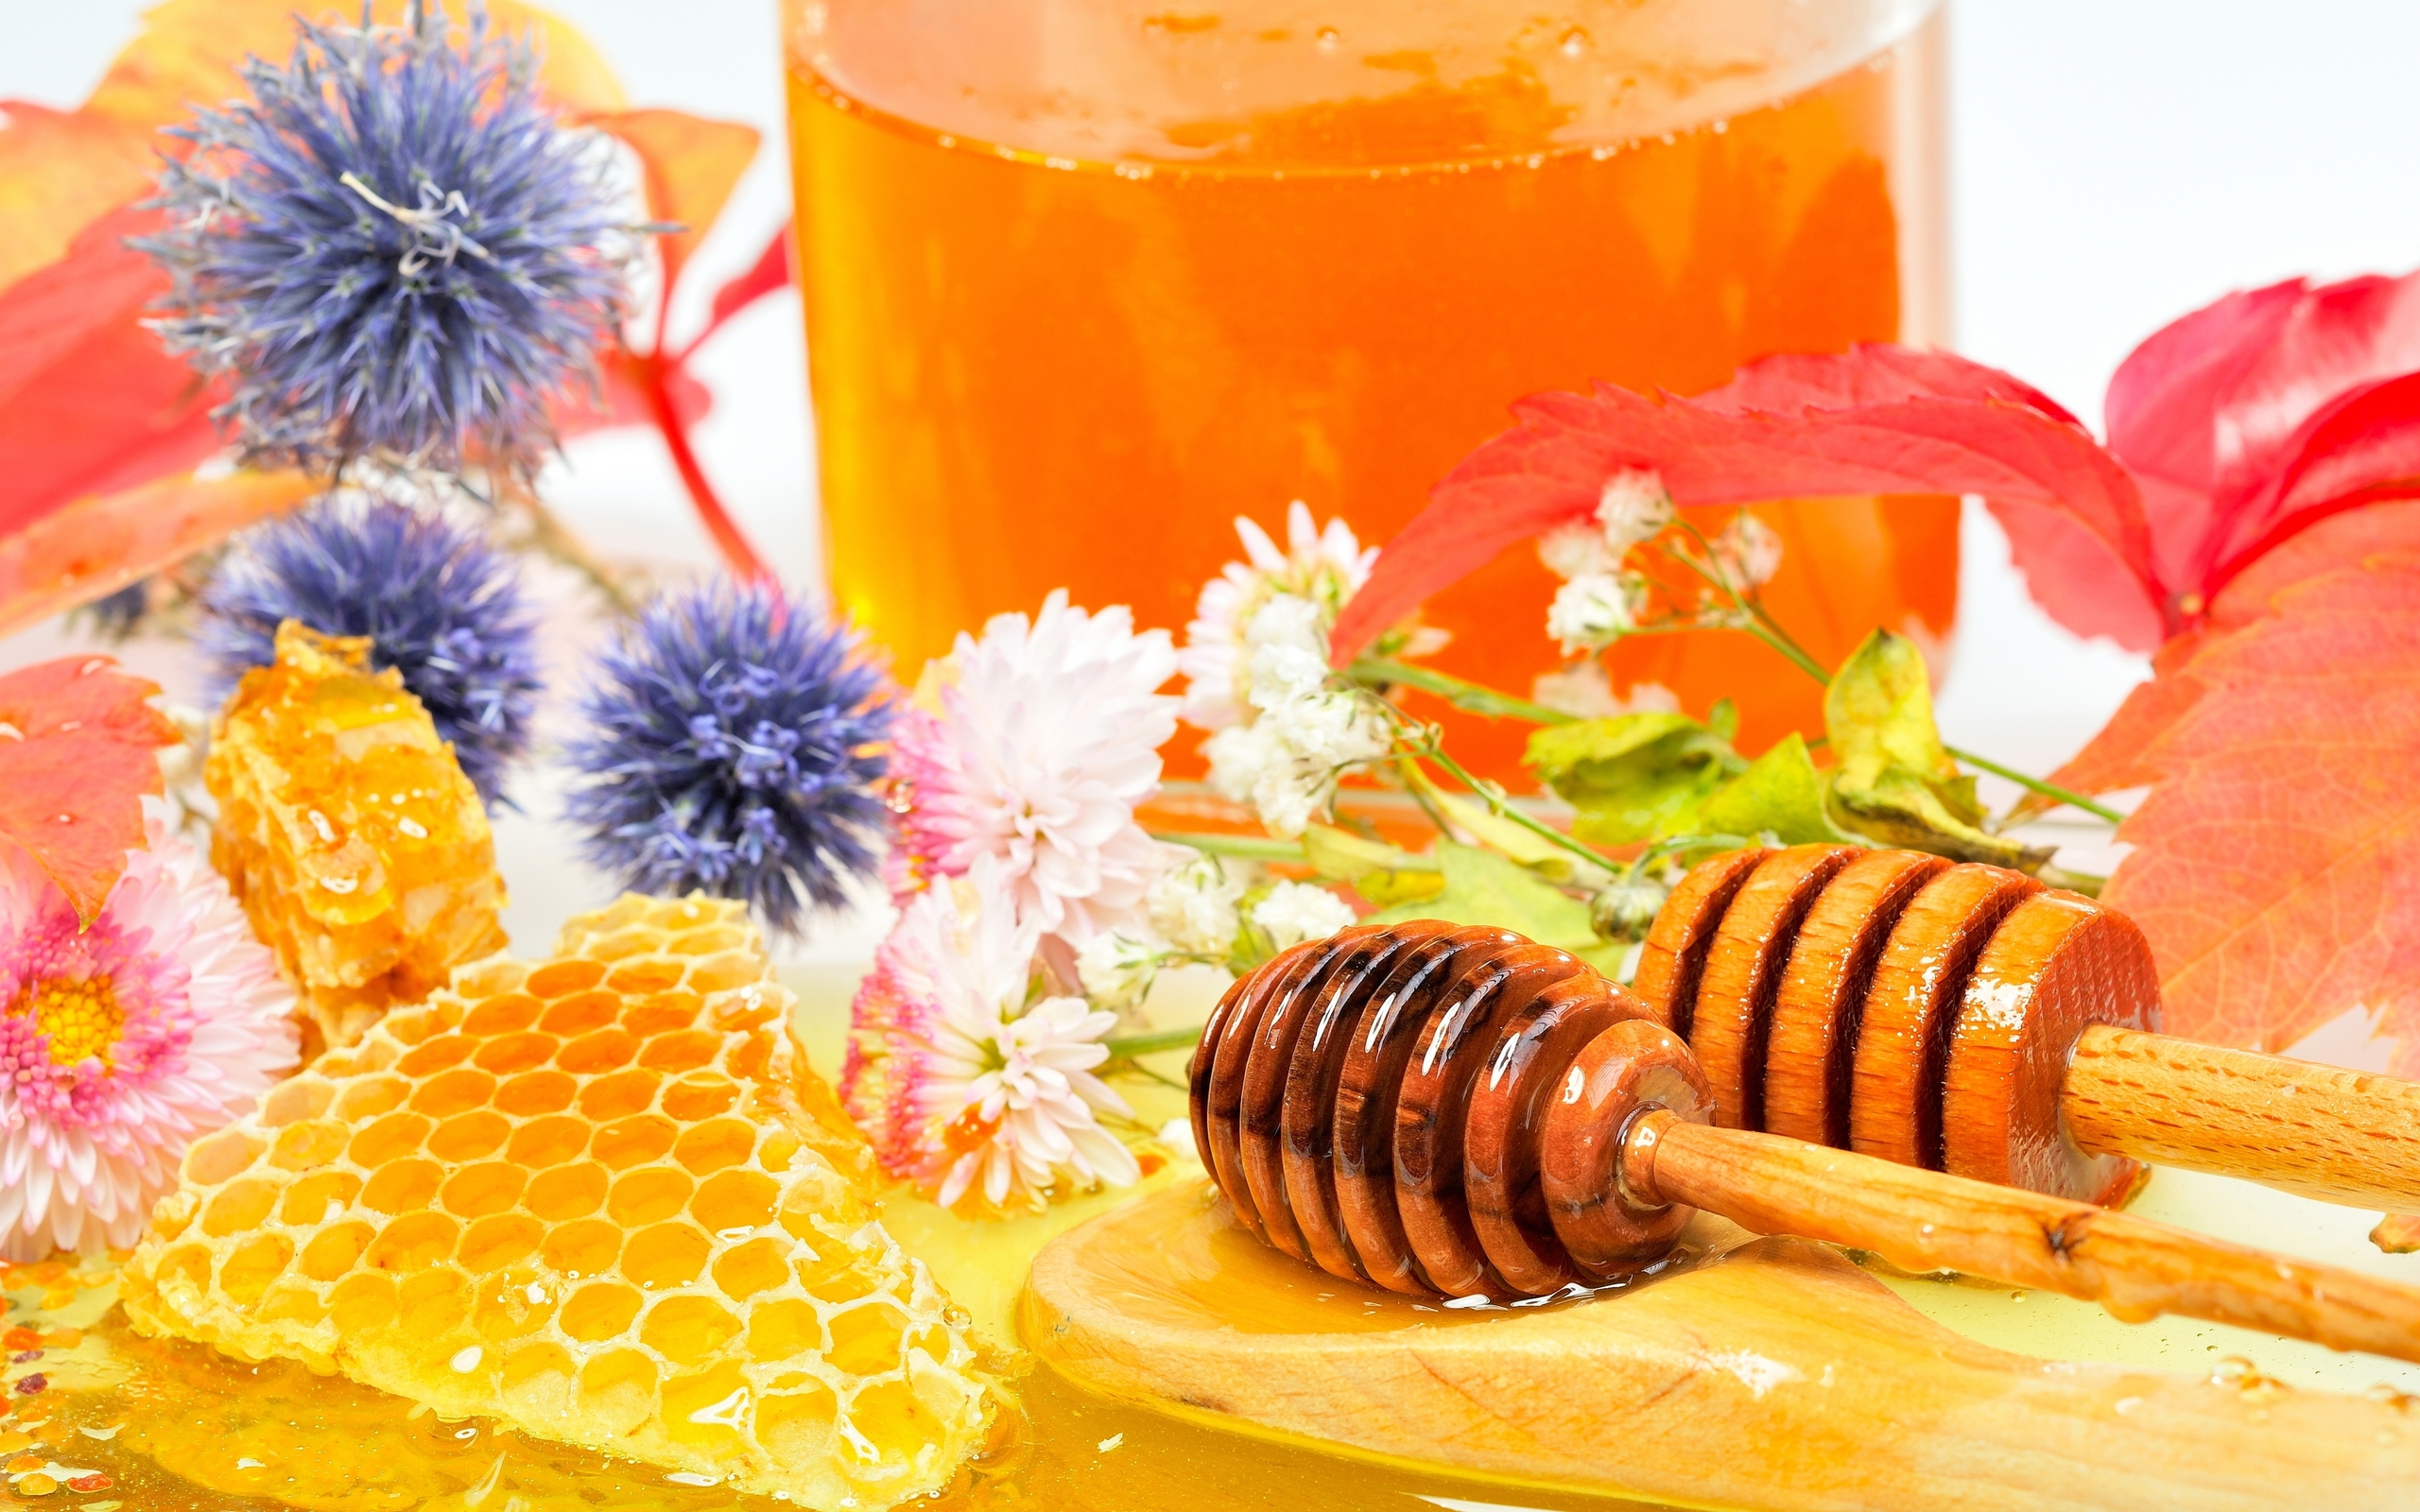 honigtapete,essen,honigbiene,süße,honig,gericht